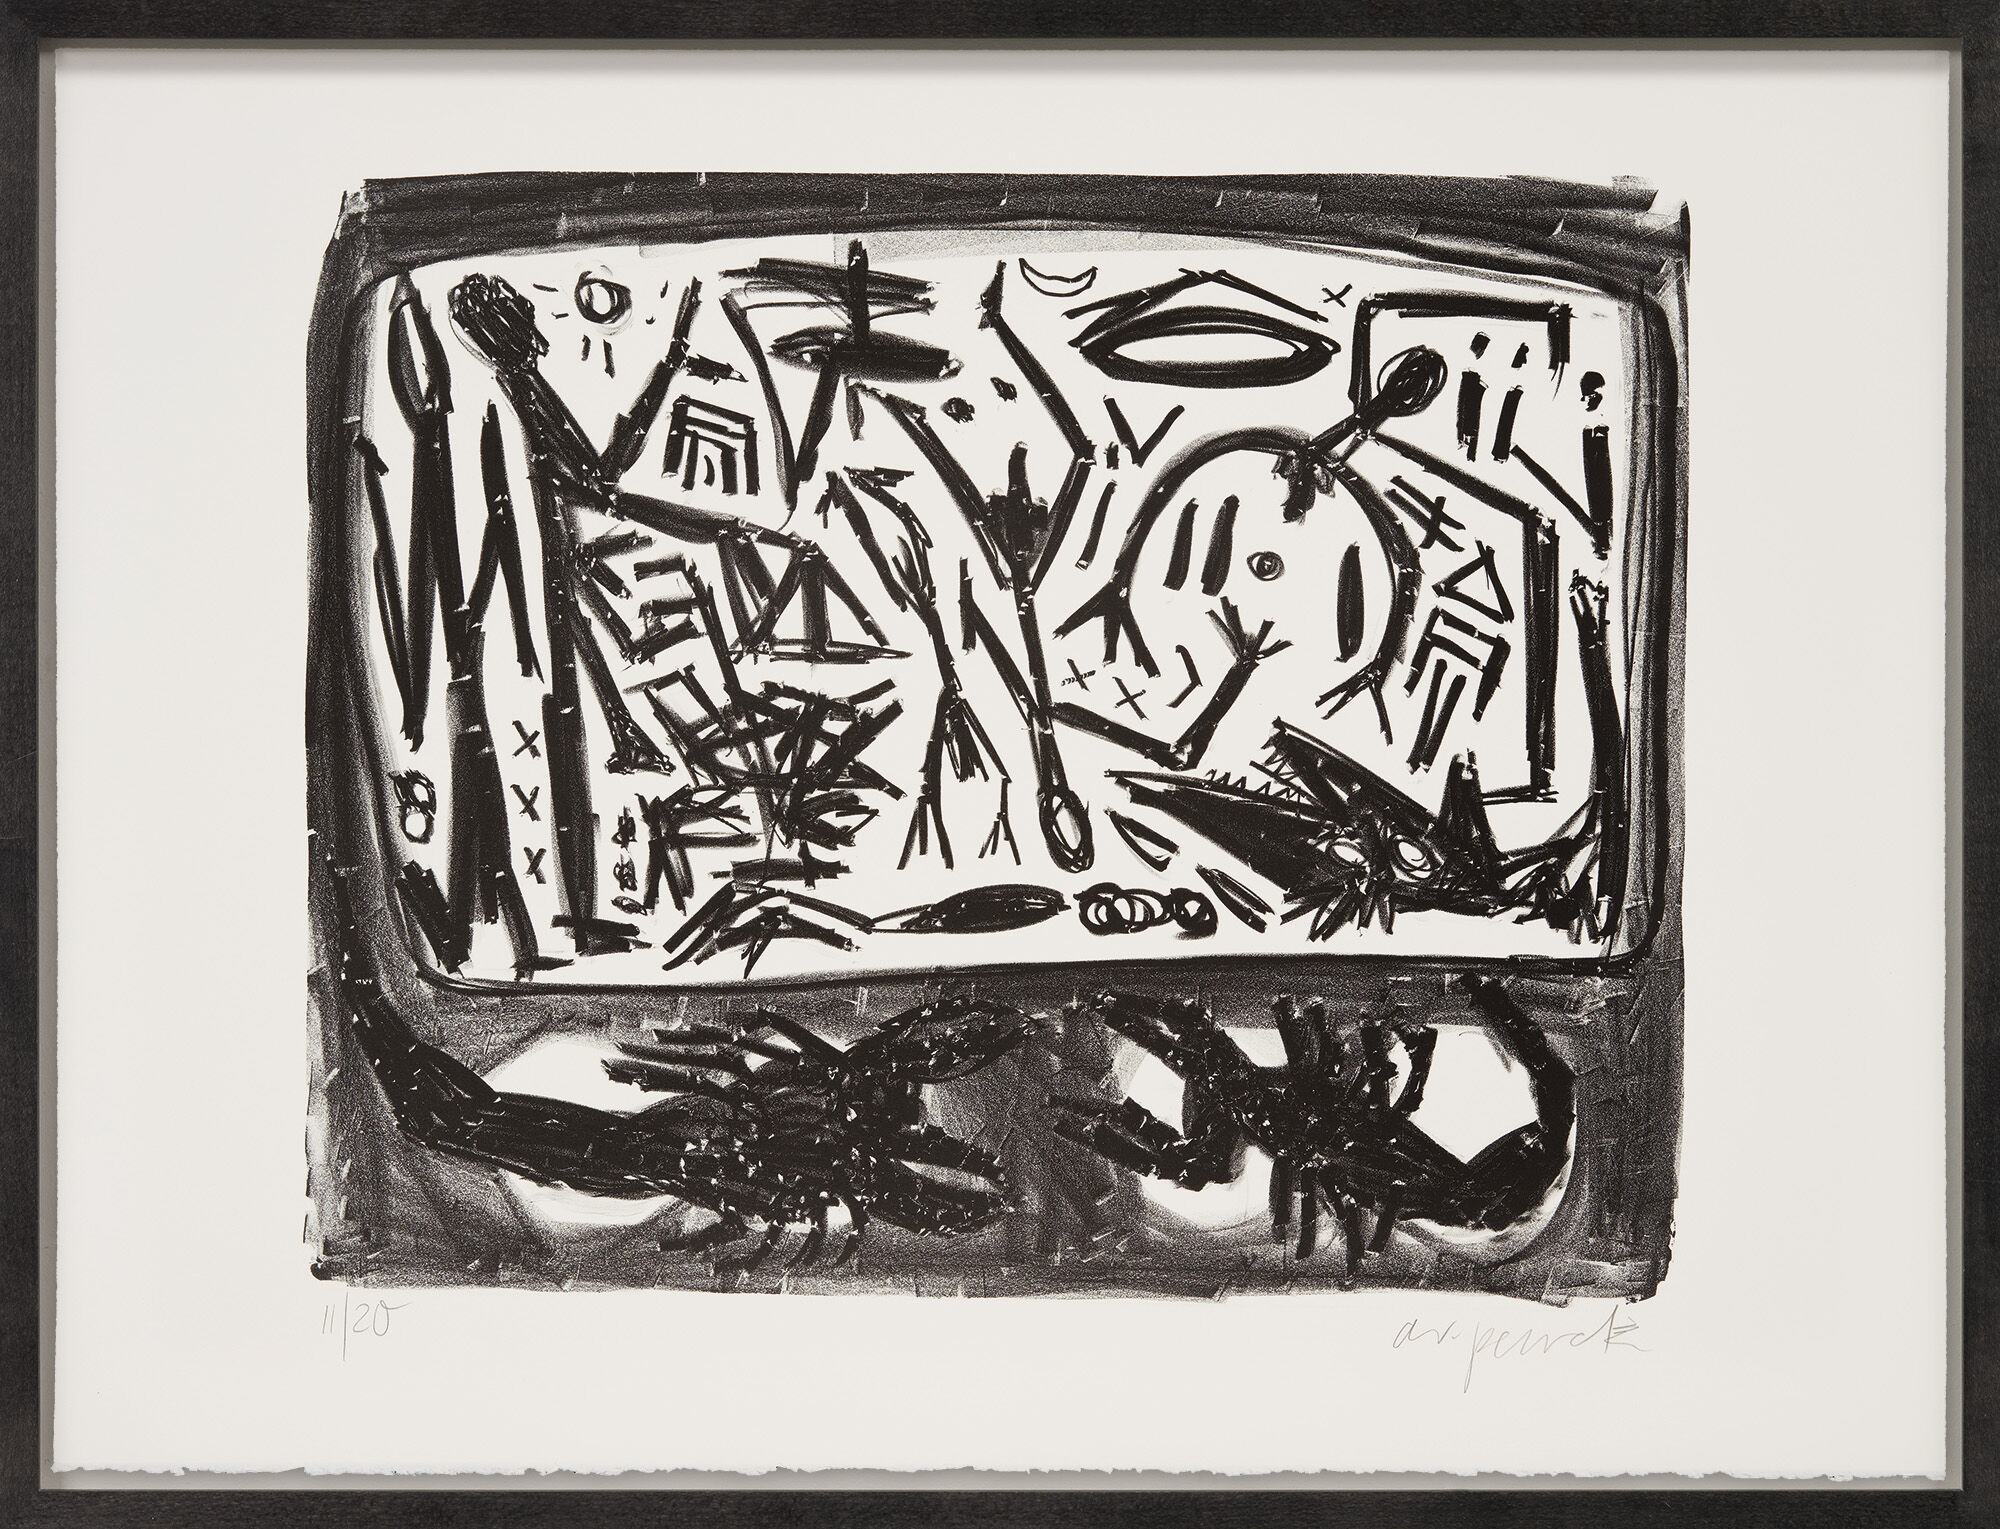 Tableau "Réunification" (1990) von A. R. Penck